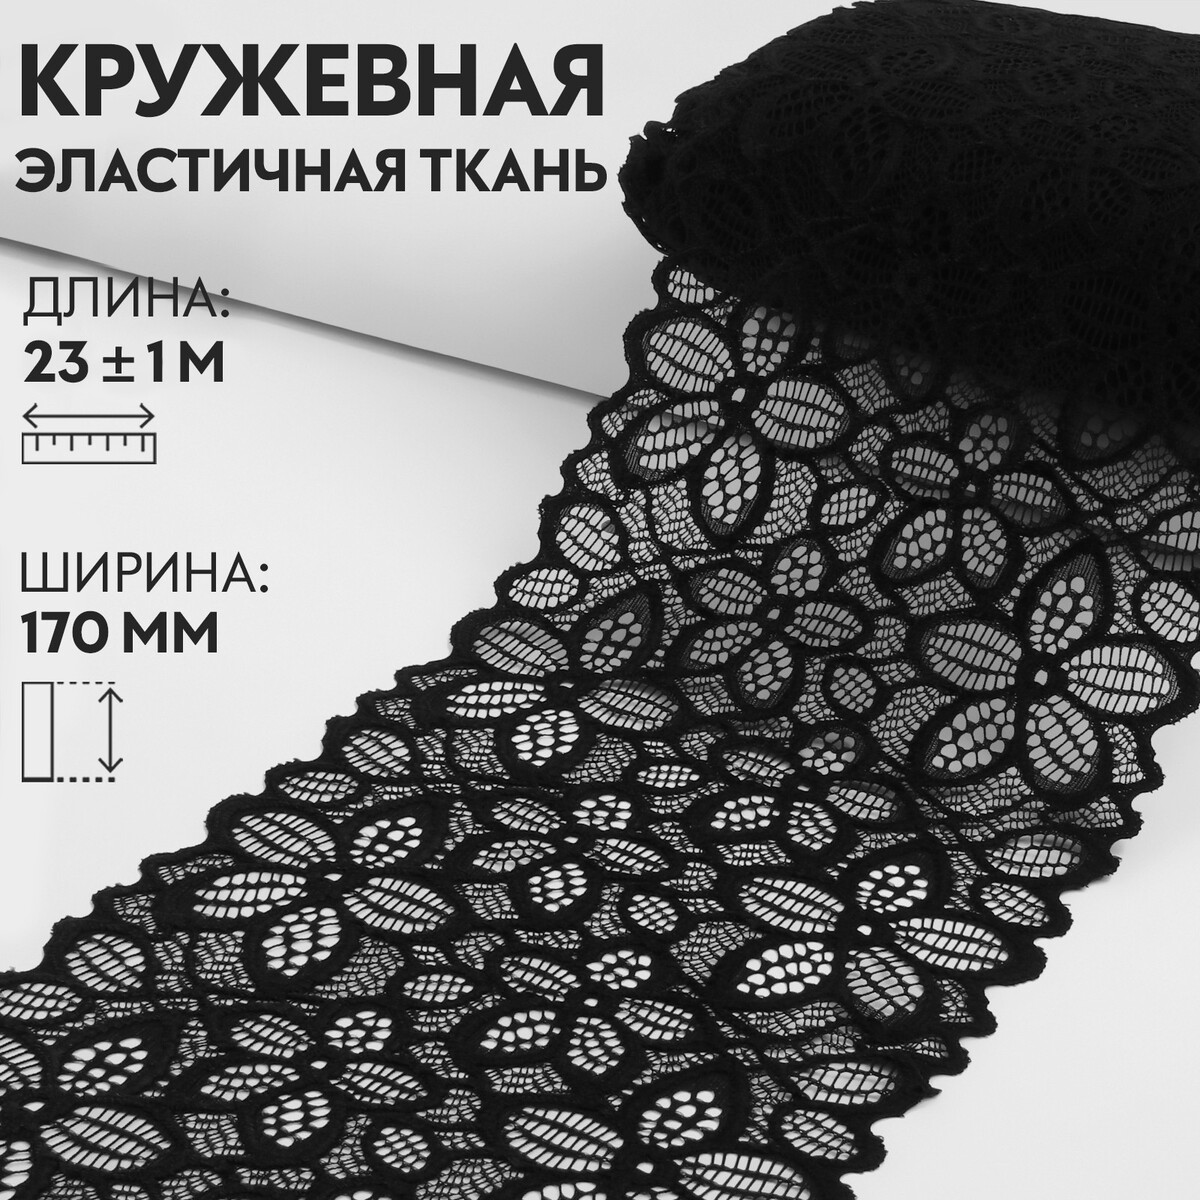 Кружевная эластичная ткань, 170 мм × 23 ± 1 м, цвет черный